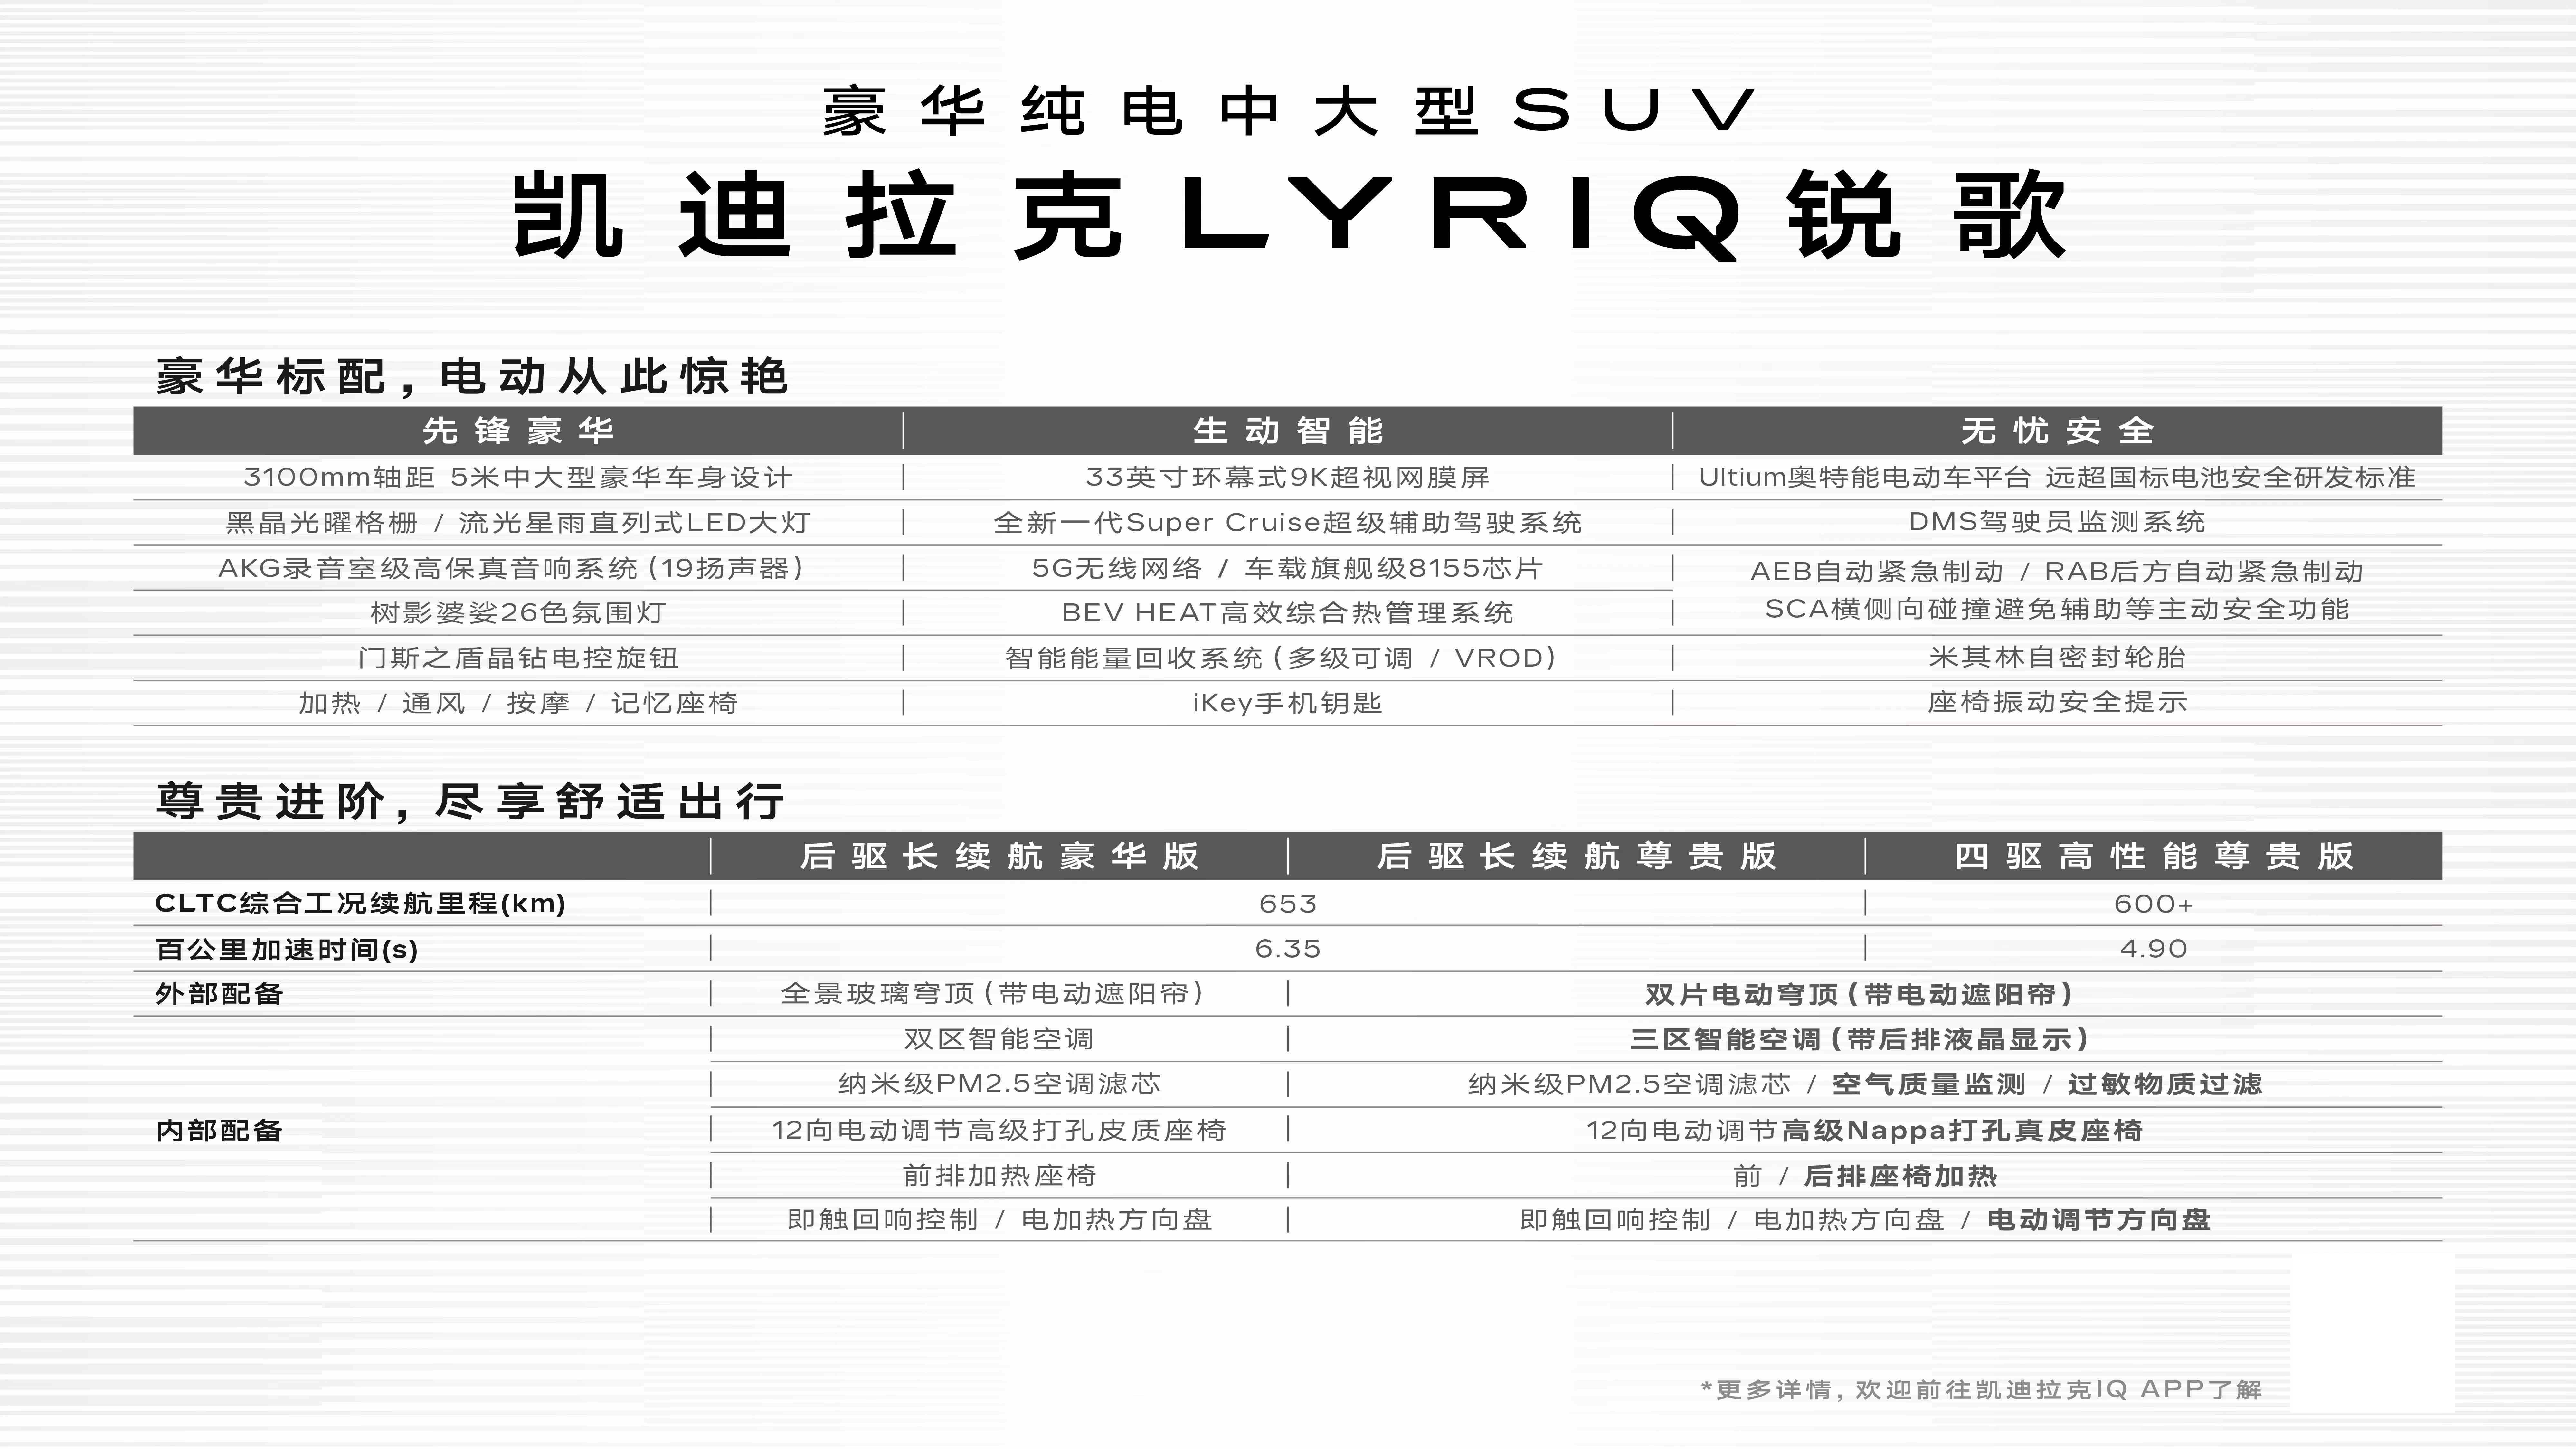 中文名公布/增两款新车型 “新人”凯迪拉克LYRIQ锐歌能力如何？